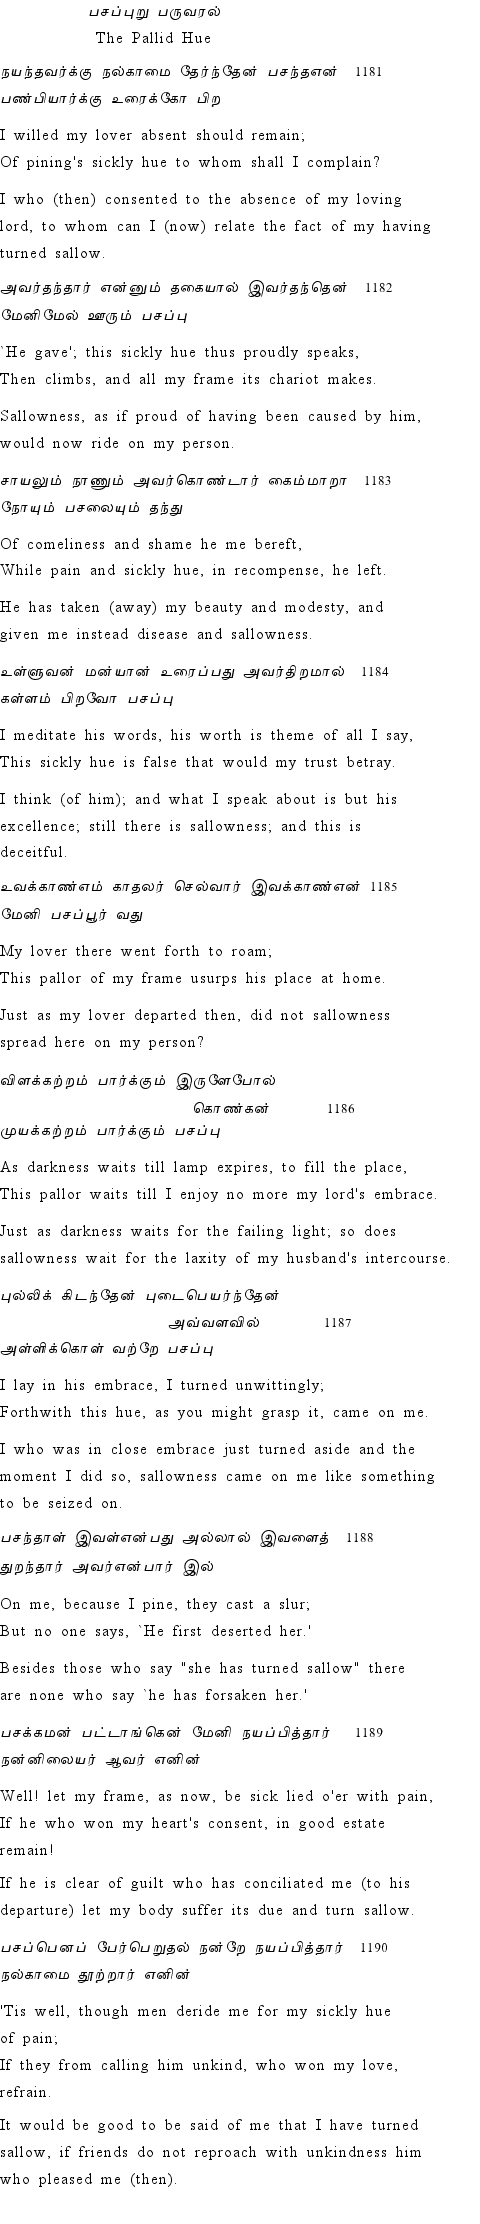 Text of Adhikaram 119